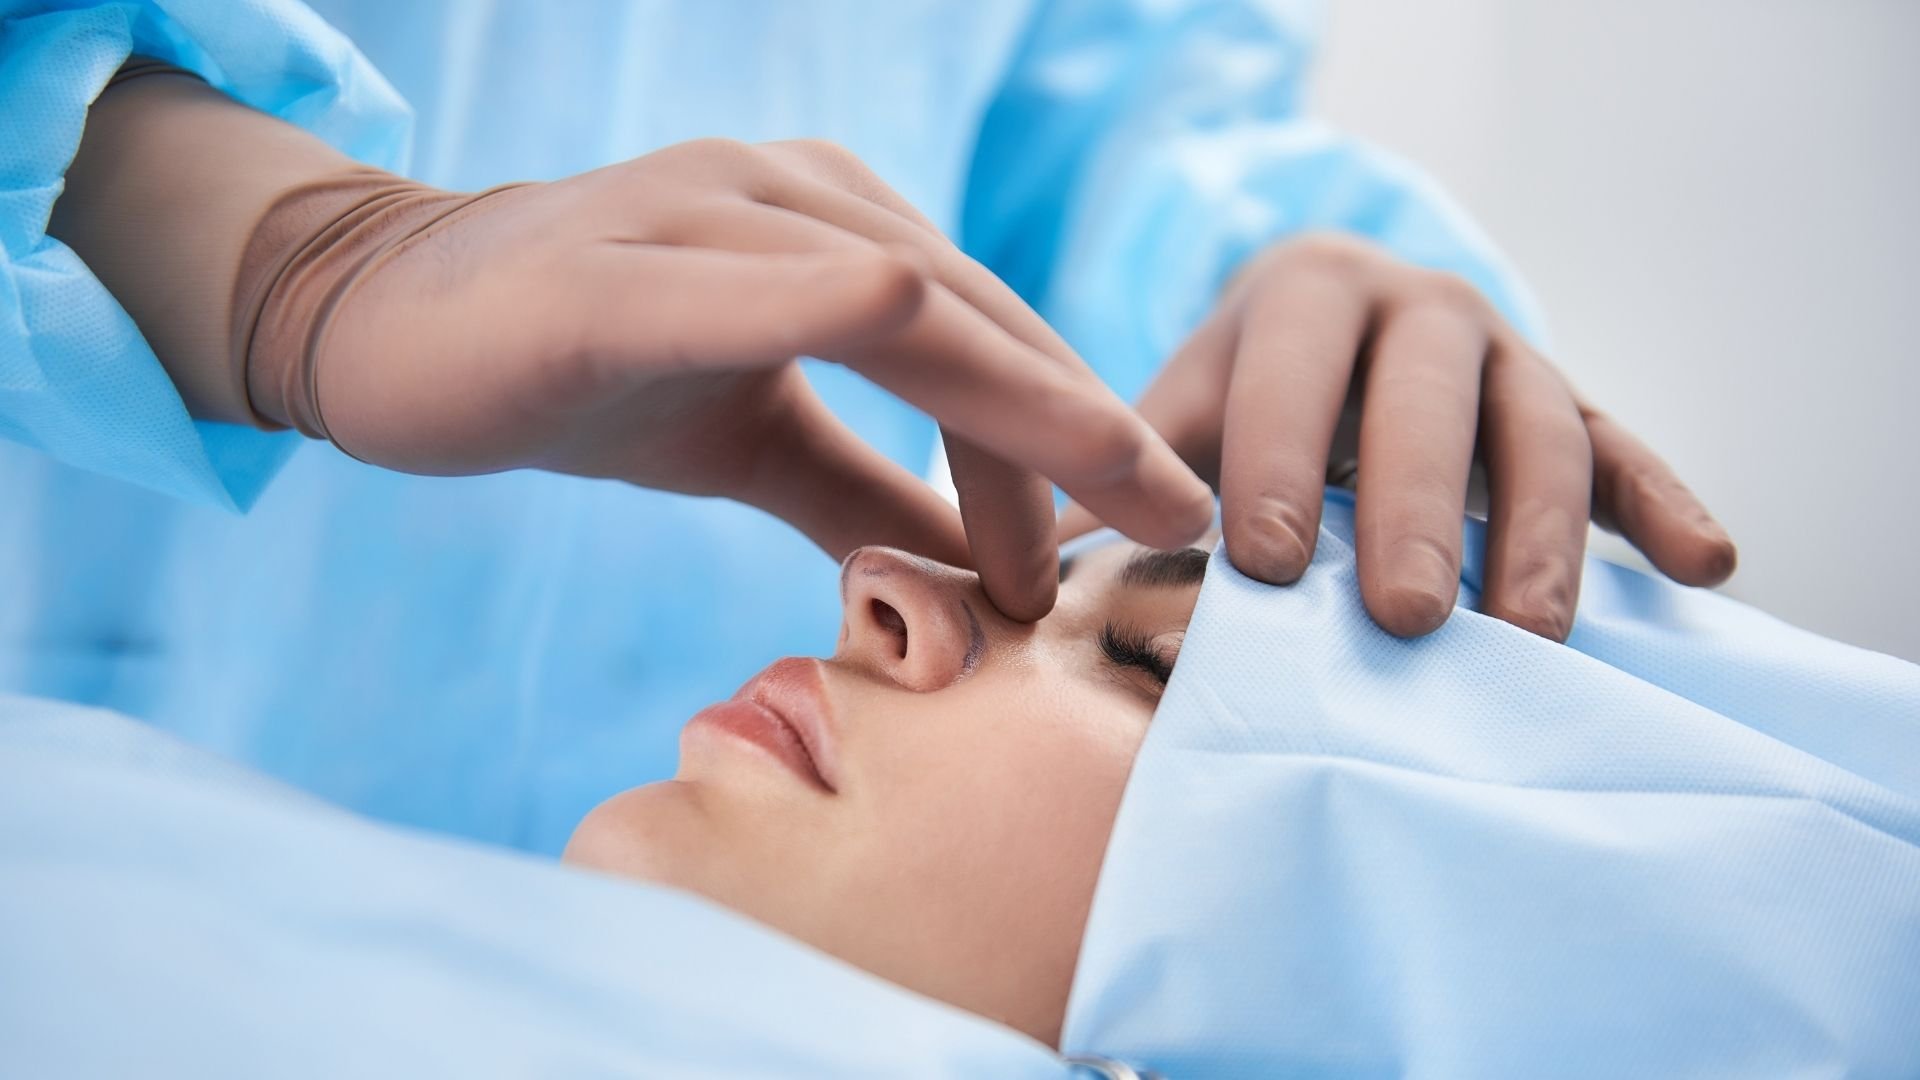 13 پرسش و پاسخ درباره عمل جراحی زیبایی بینی